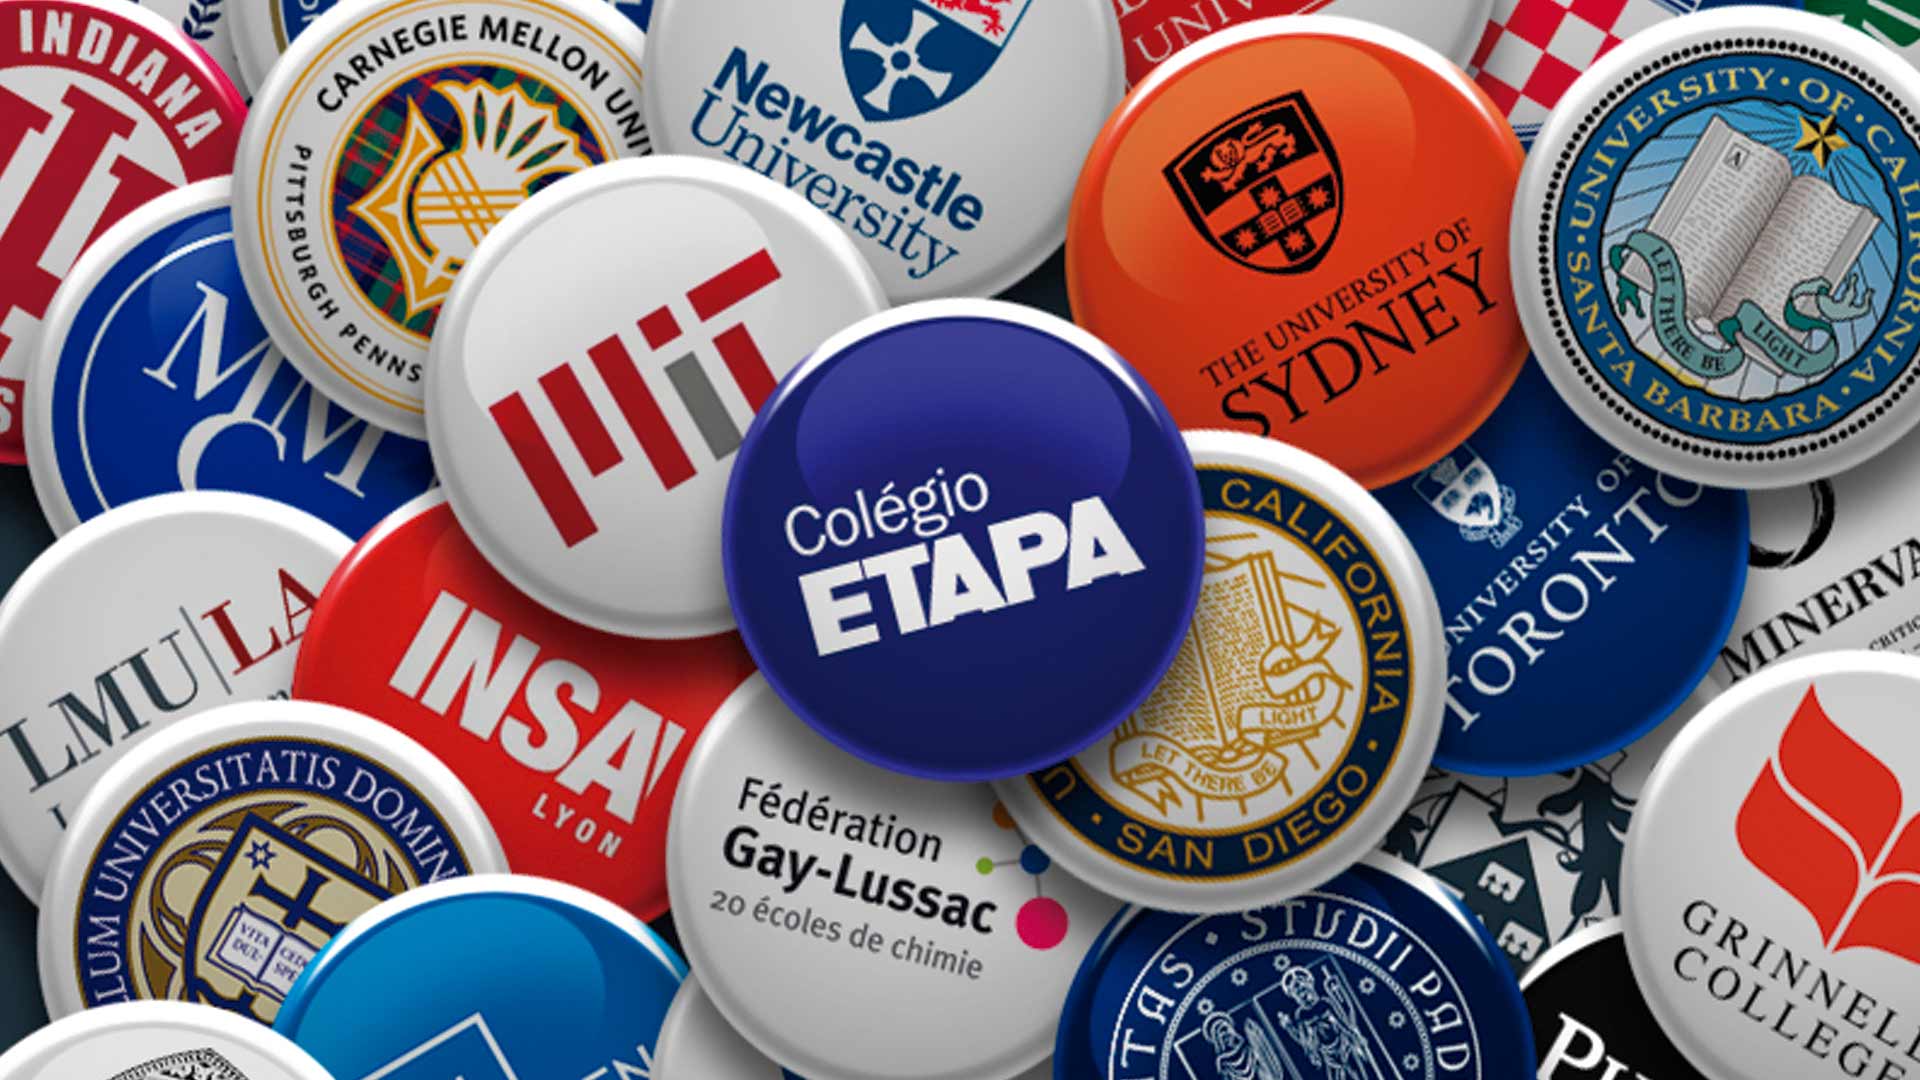 Alunos-do-Colegio-Etapa-conquistam-aprovacoes-em-renomadas-universidades-da-America-do-Norte-da-Europa-e-da-Oceania